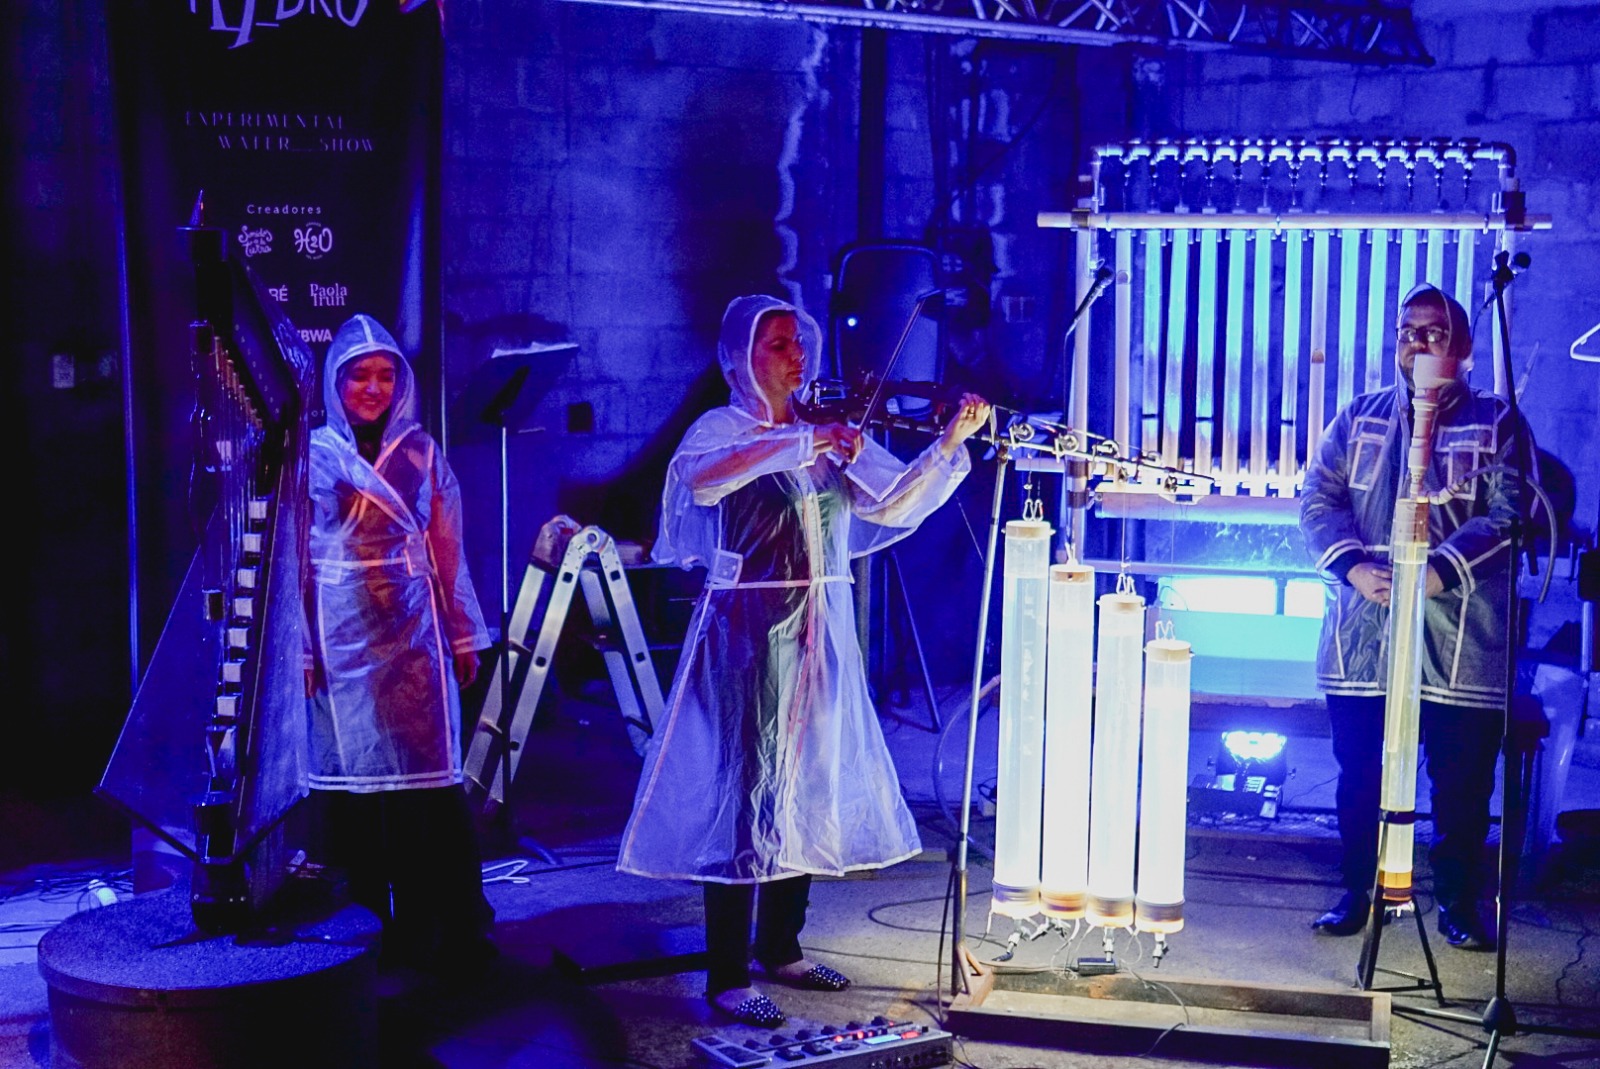 Sonidos de la Tierra presenta su orquesta de agua con H_Y_DRO Experimental Show